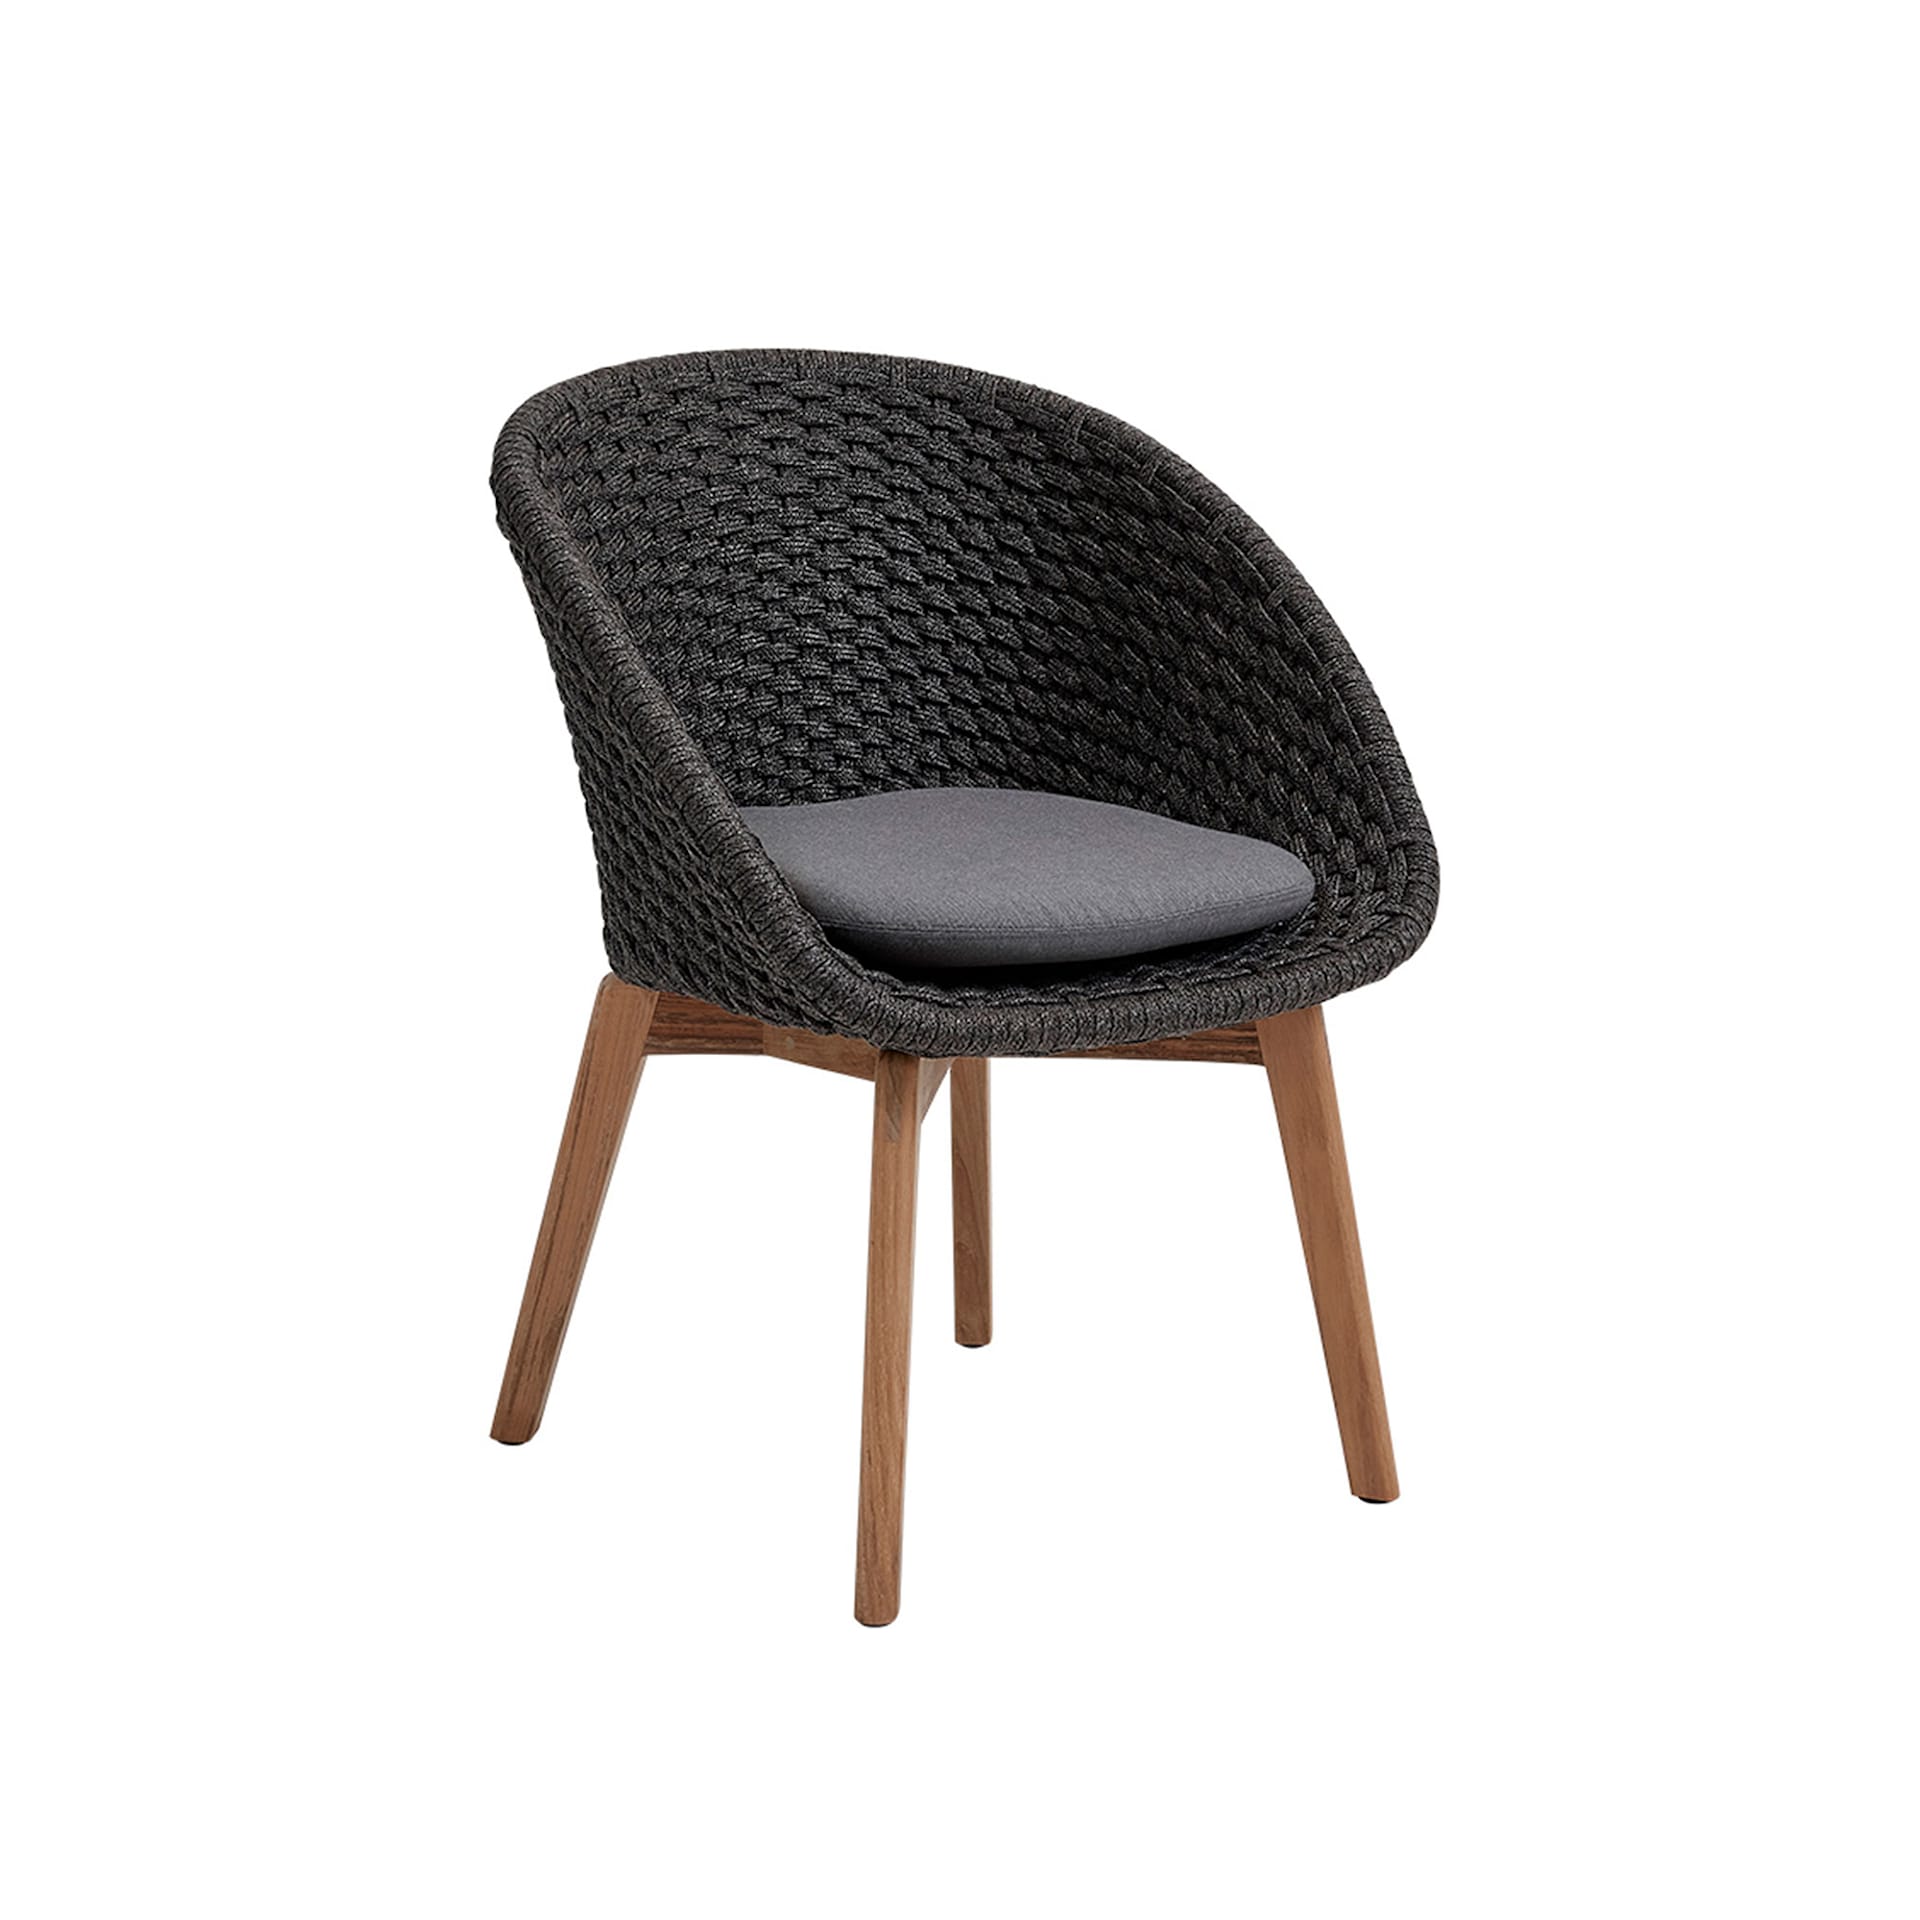 Peacock Cushion Chair - Cane-Line - NO GA